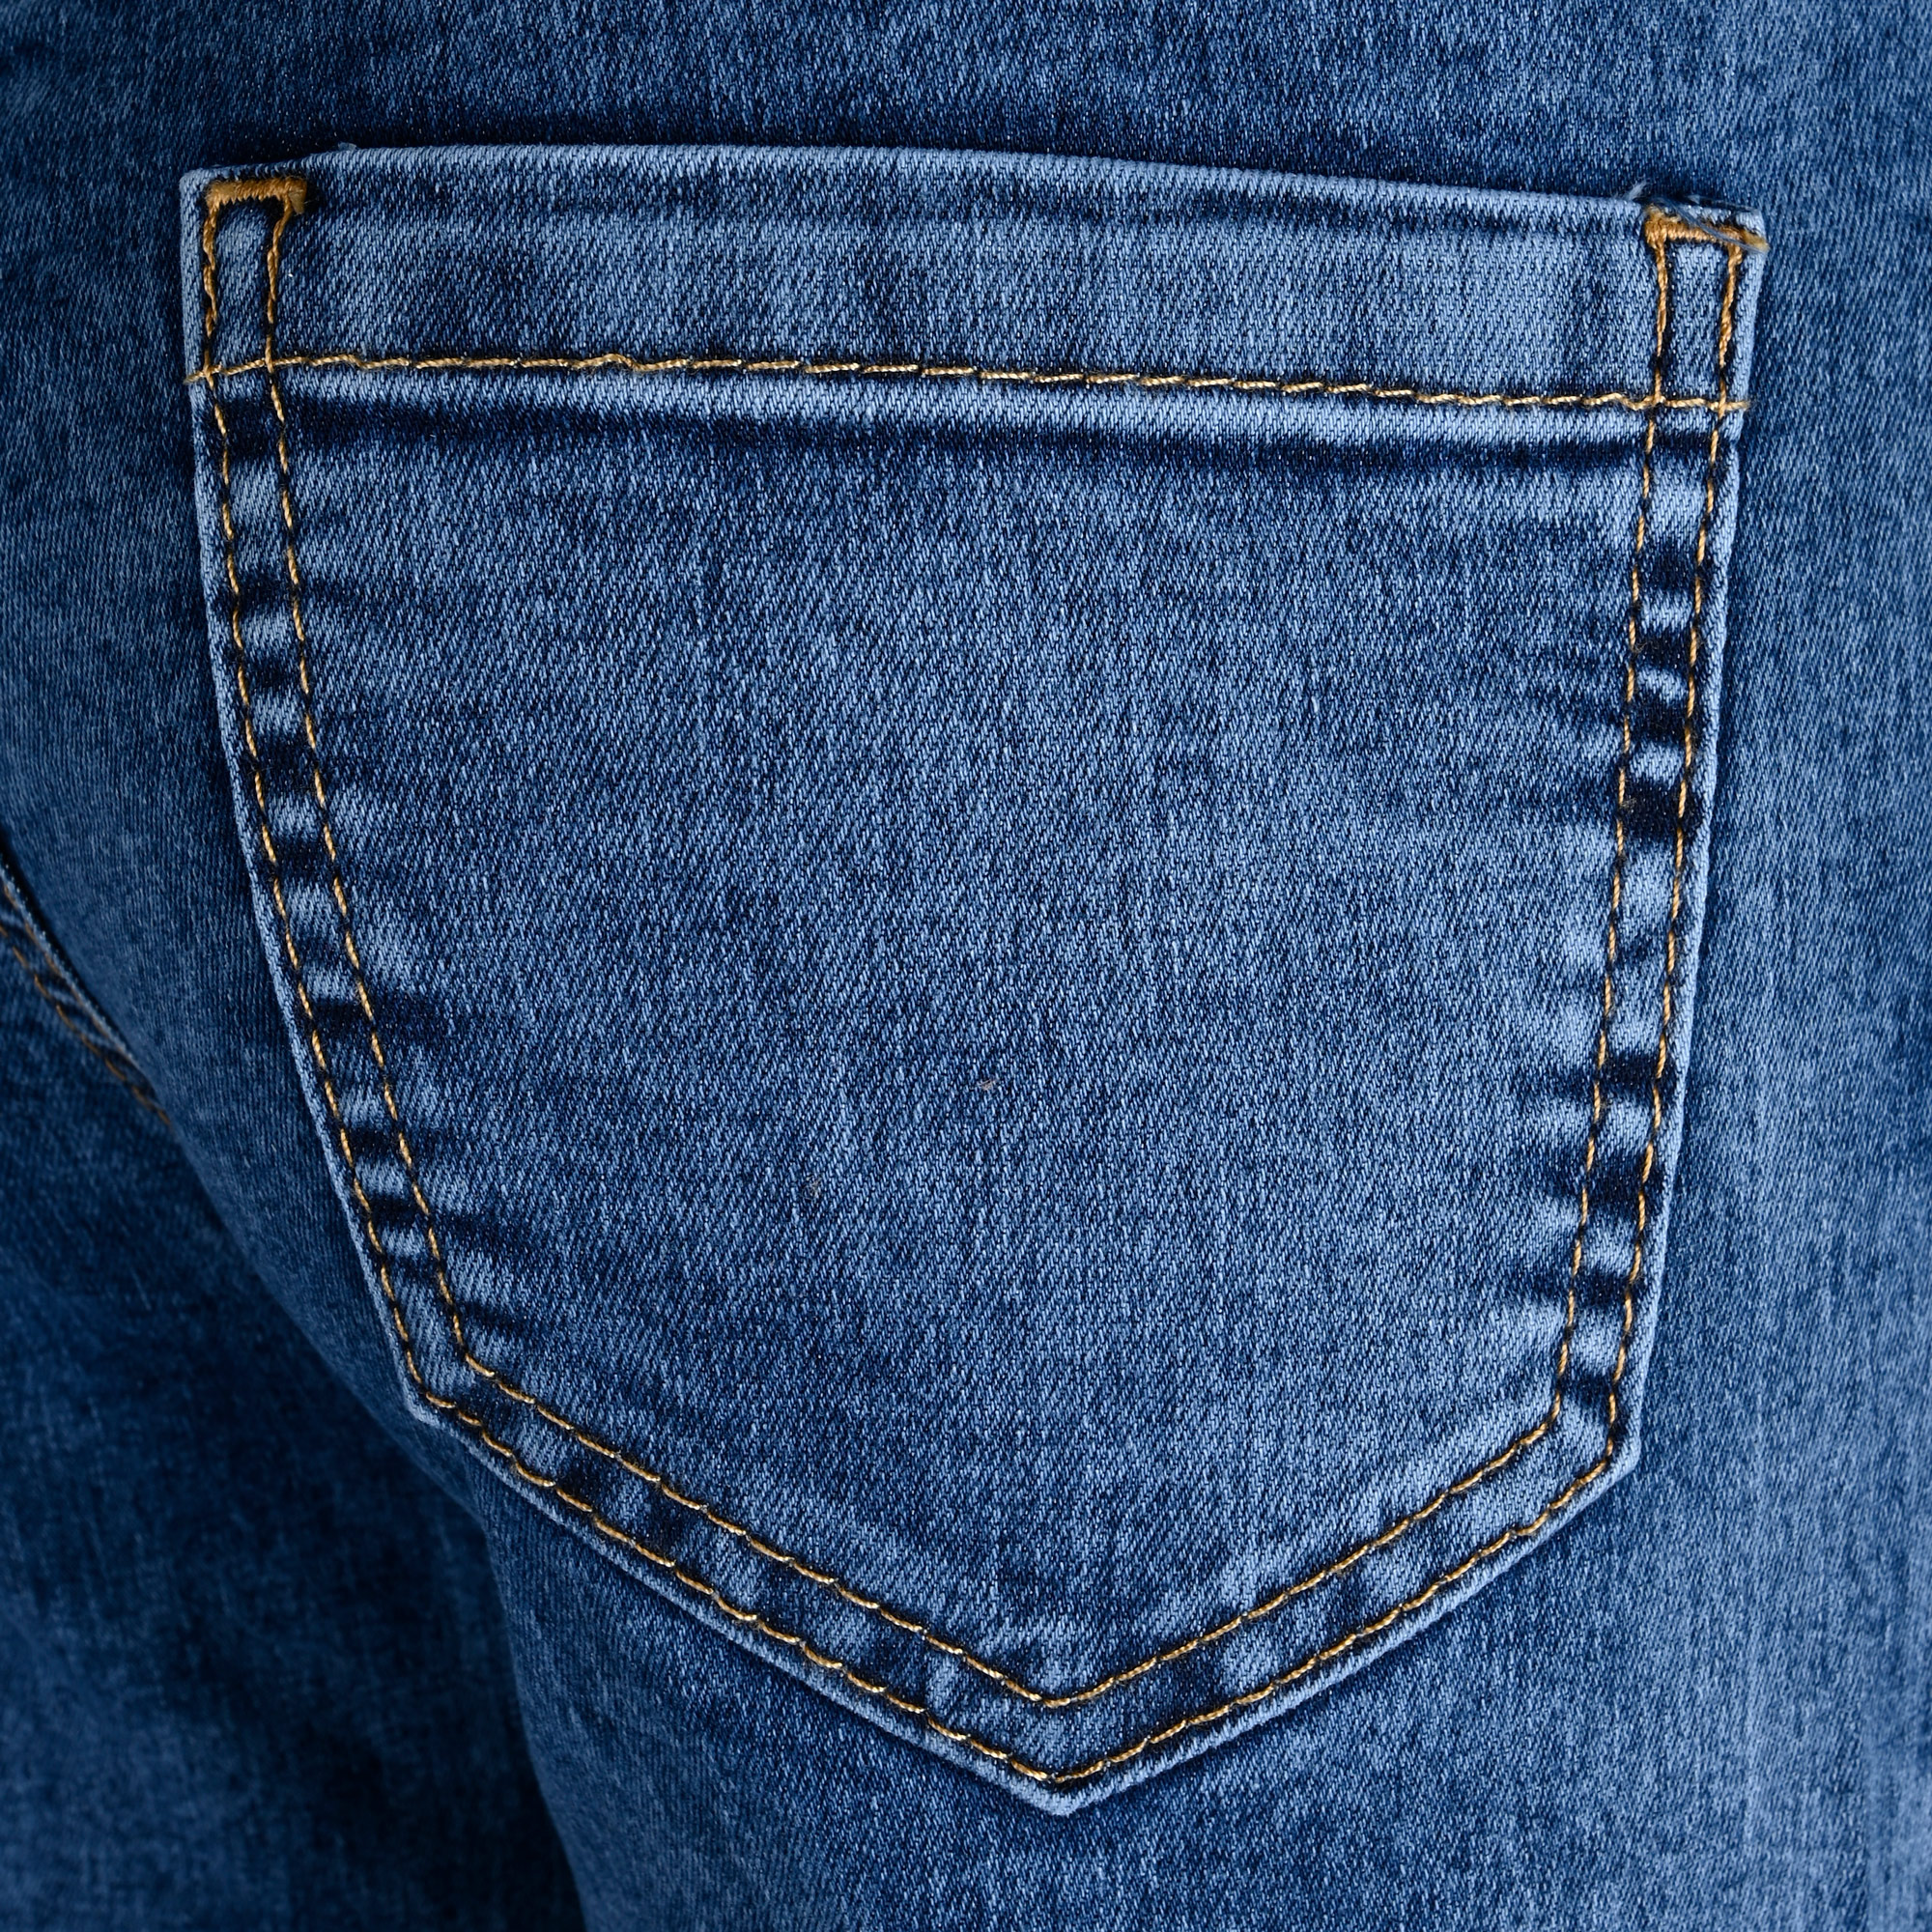 1304-NOS Girls Wide Leg Jeans verfügbar in Slim,Normal